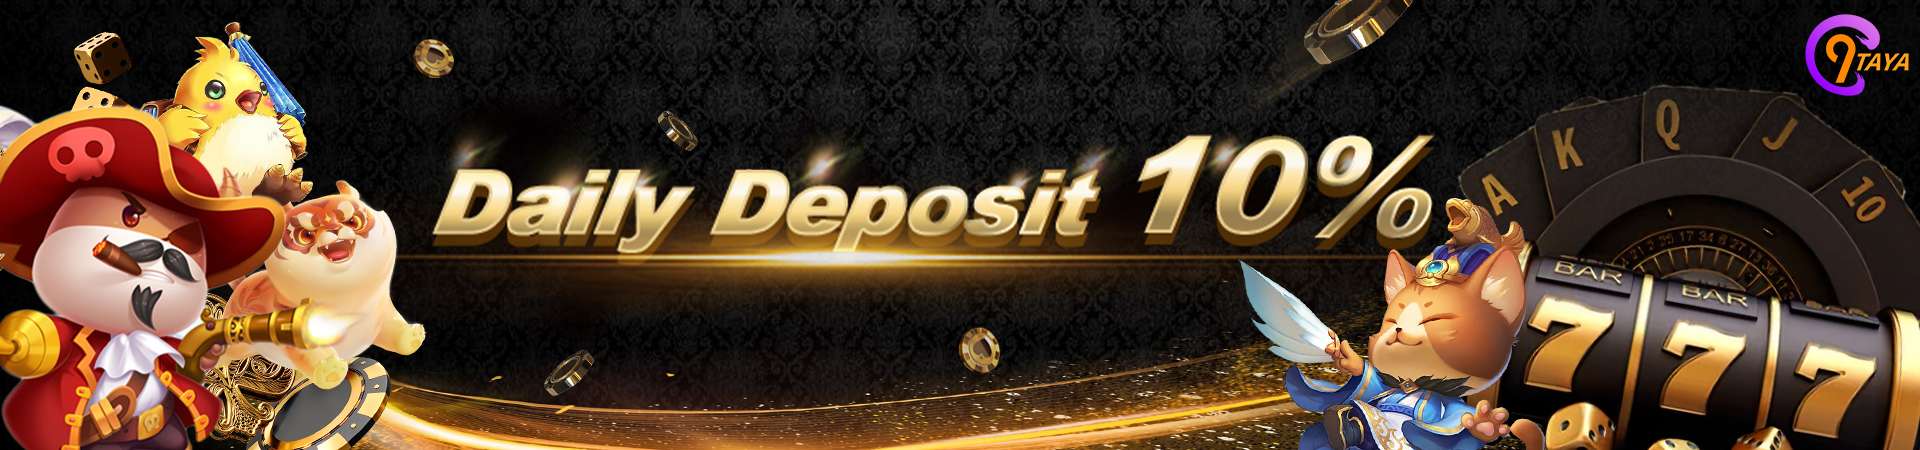 C9taya Daily Deposit